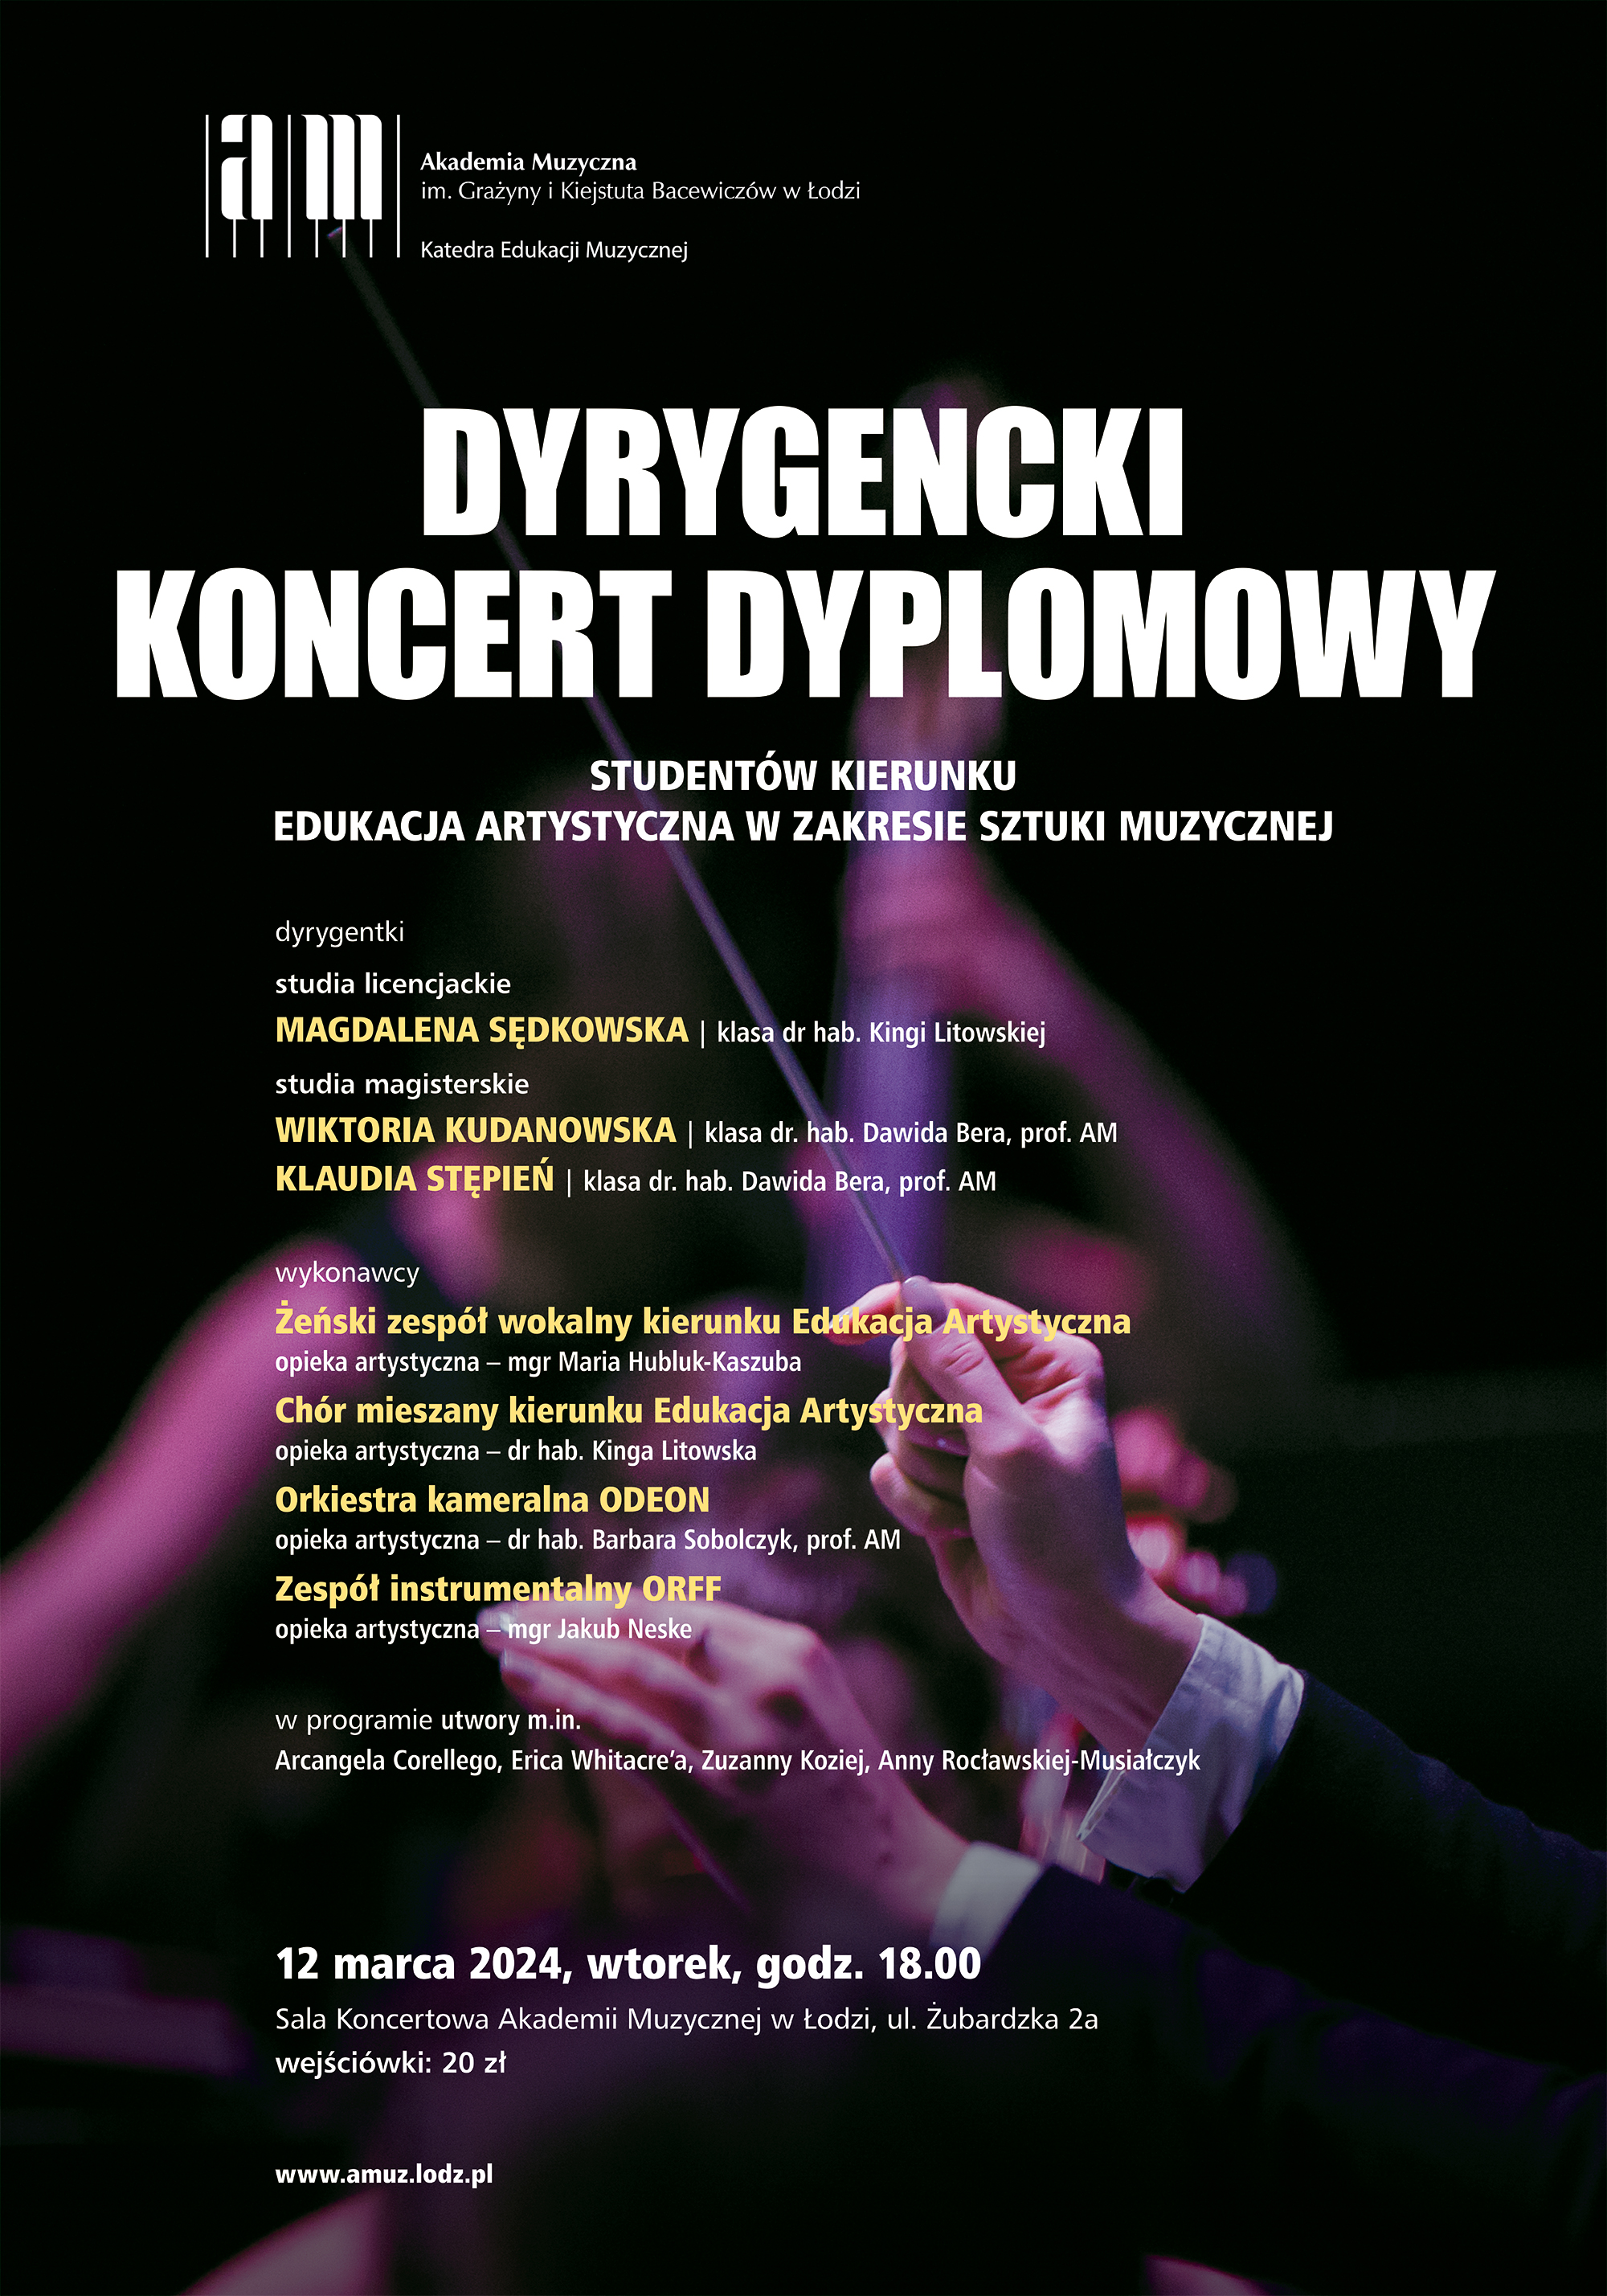 Dyrygencki Koncert Dyplomowy